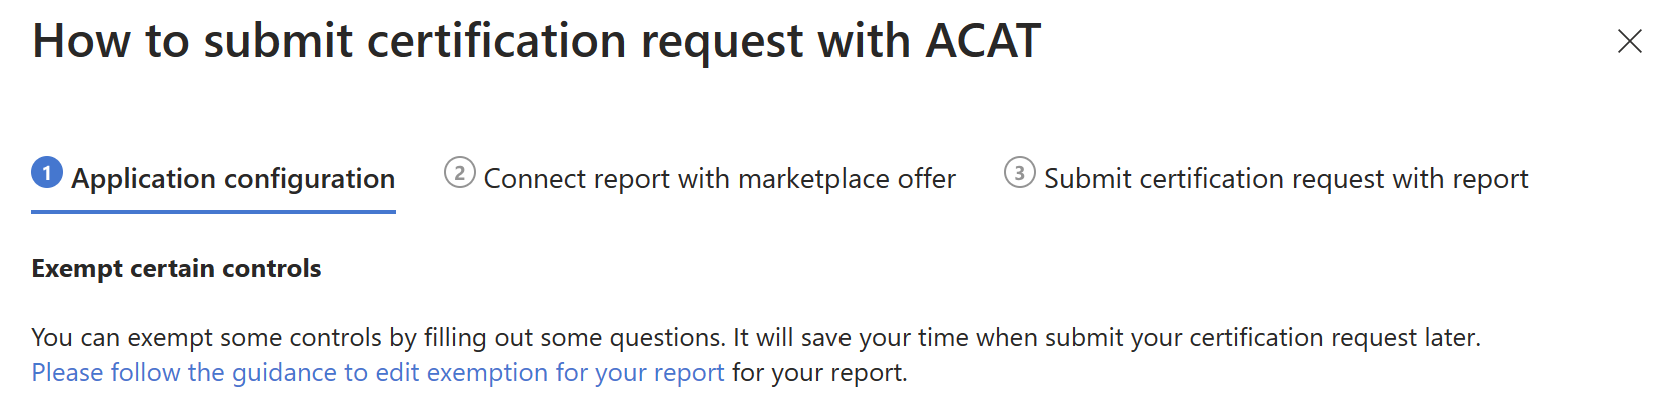 使用 ACAT 提交认证的指南